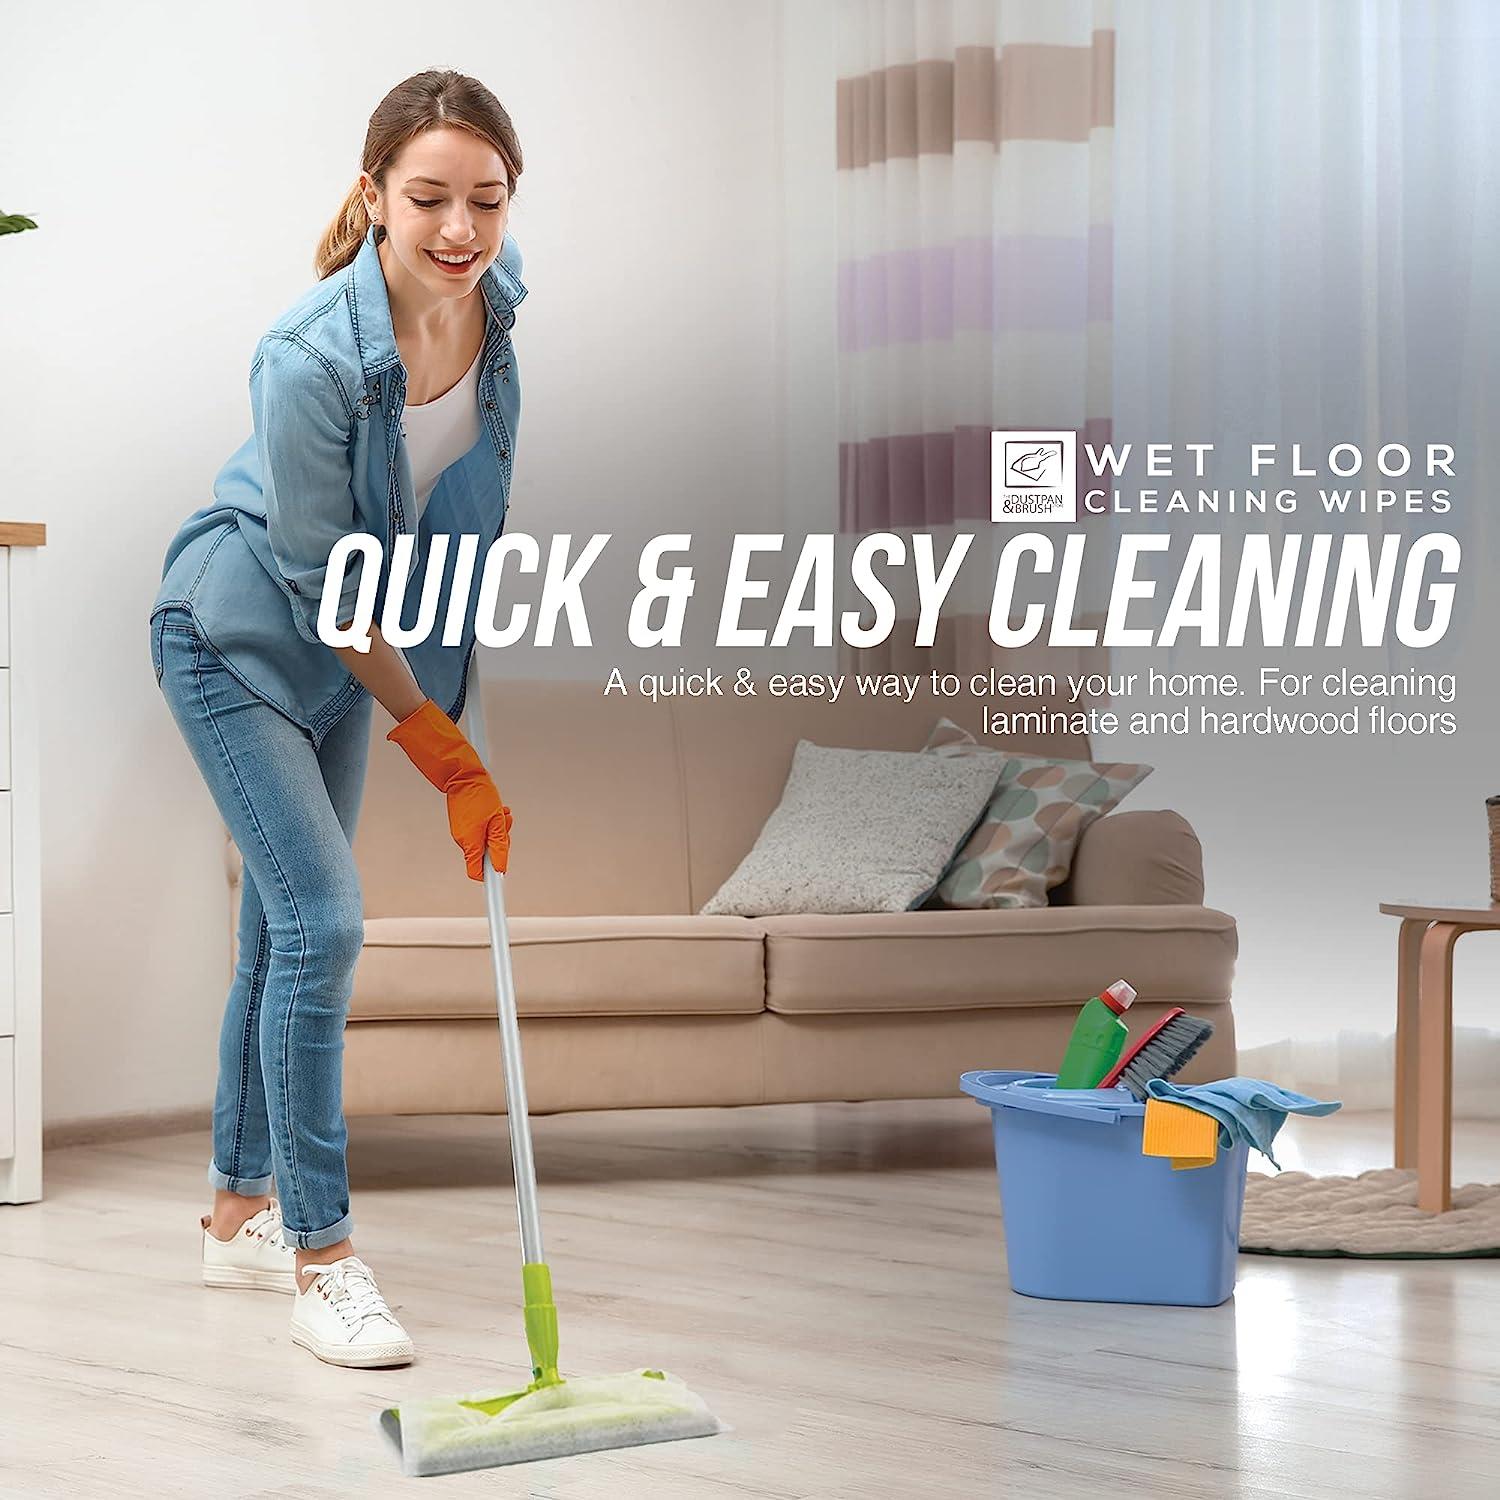 10 Packs of TDBS Wet Floor Wipe Cleaning Cloths